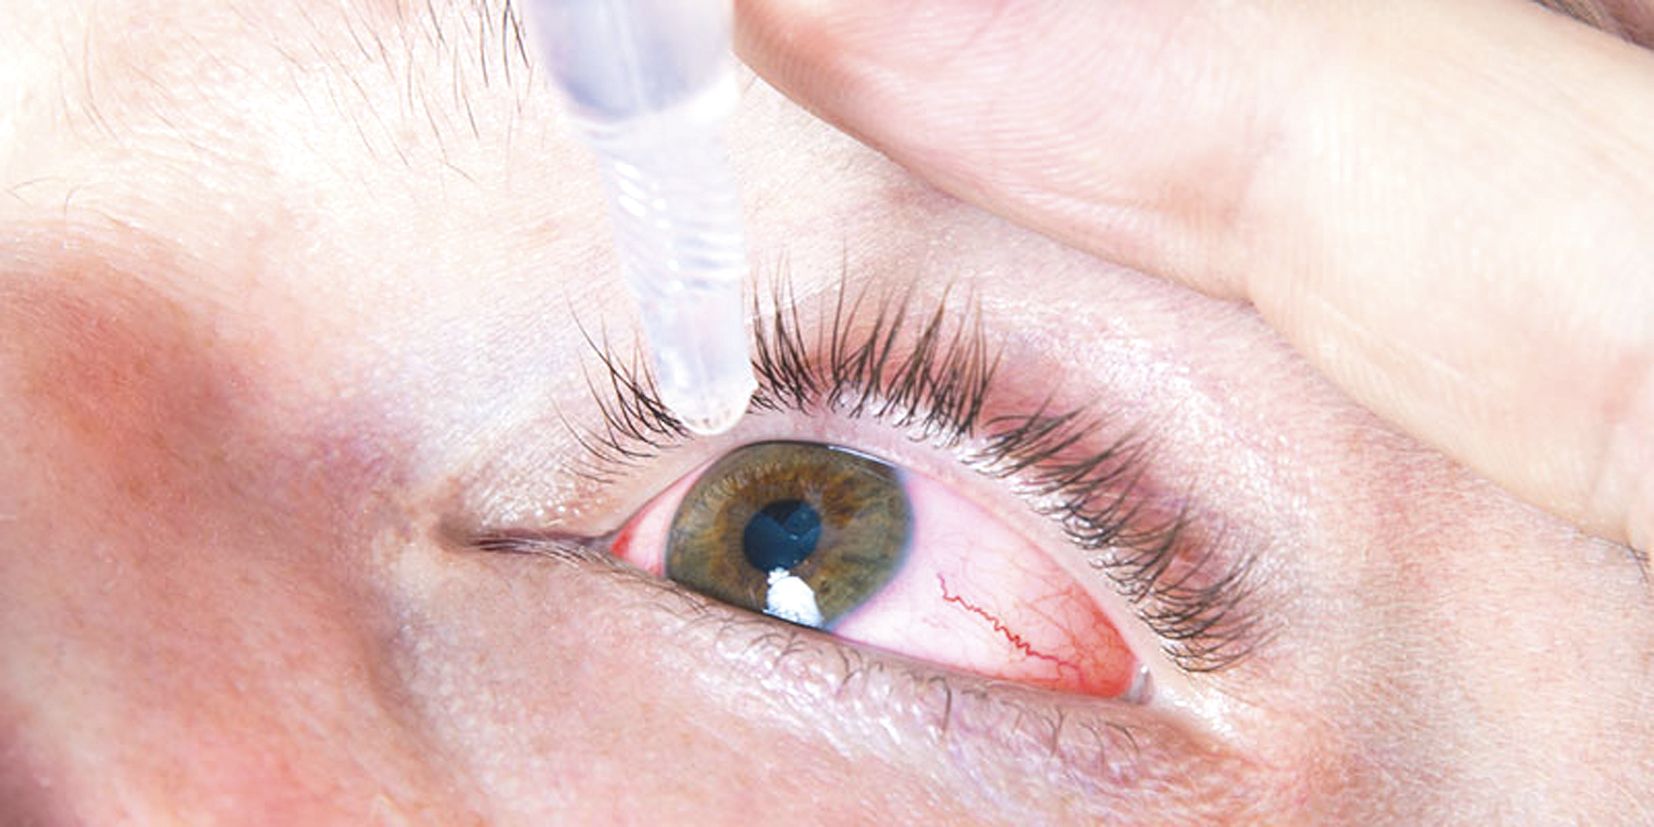 Pour le nettoyage des yeux, rincer l’œil avec du sérum physiologique ou un collyre prescrit par le médecin, et l’essuyer avec un mouchoir en papier à usage unique.